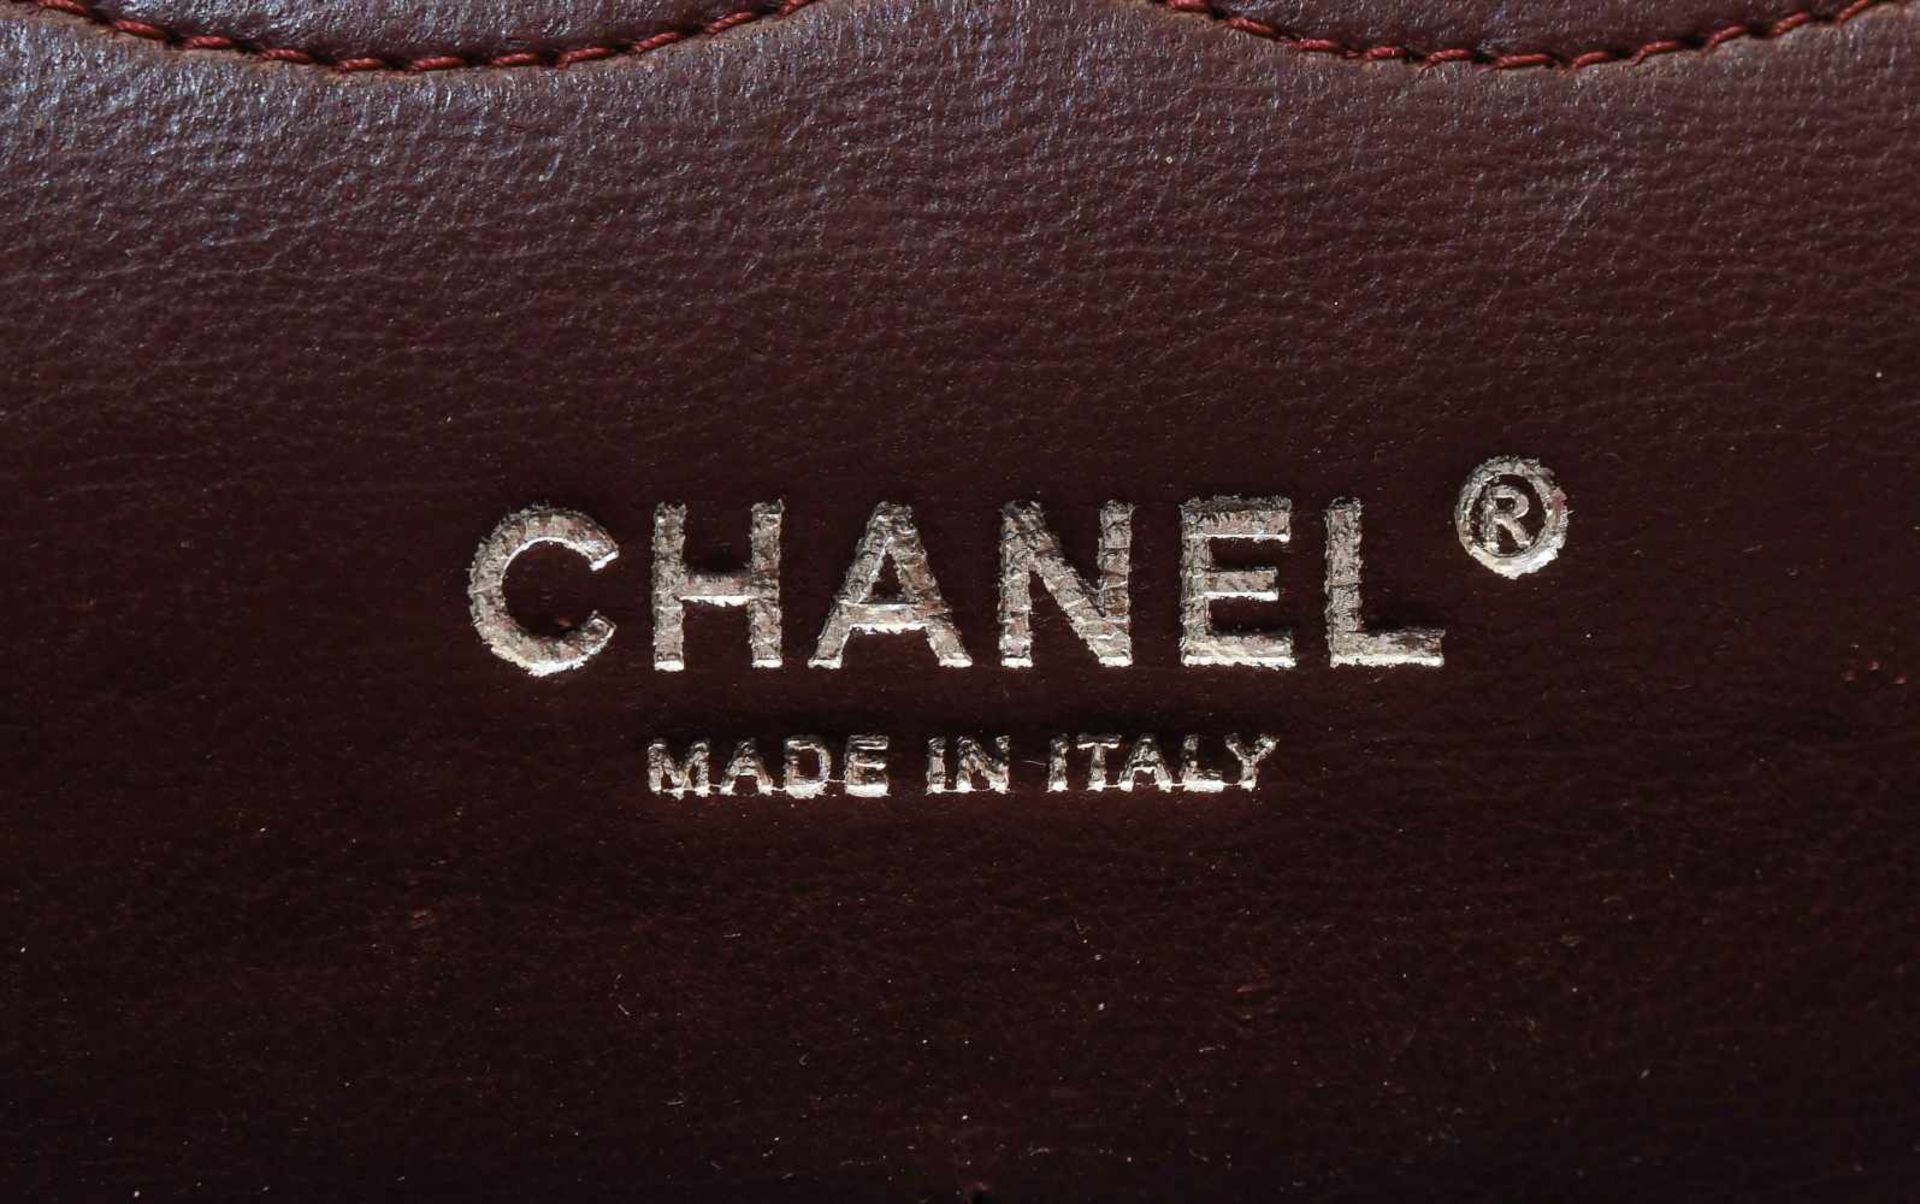 Chanel, Handtasche "Timeless" Jumbo Aus schwarzem Leder mit gestepptem Rautenmuster. - Bild 5 aus 13